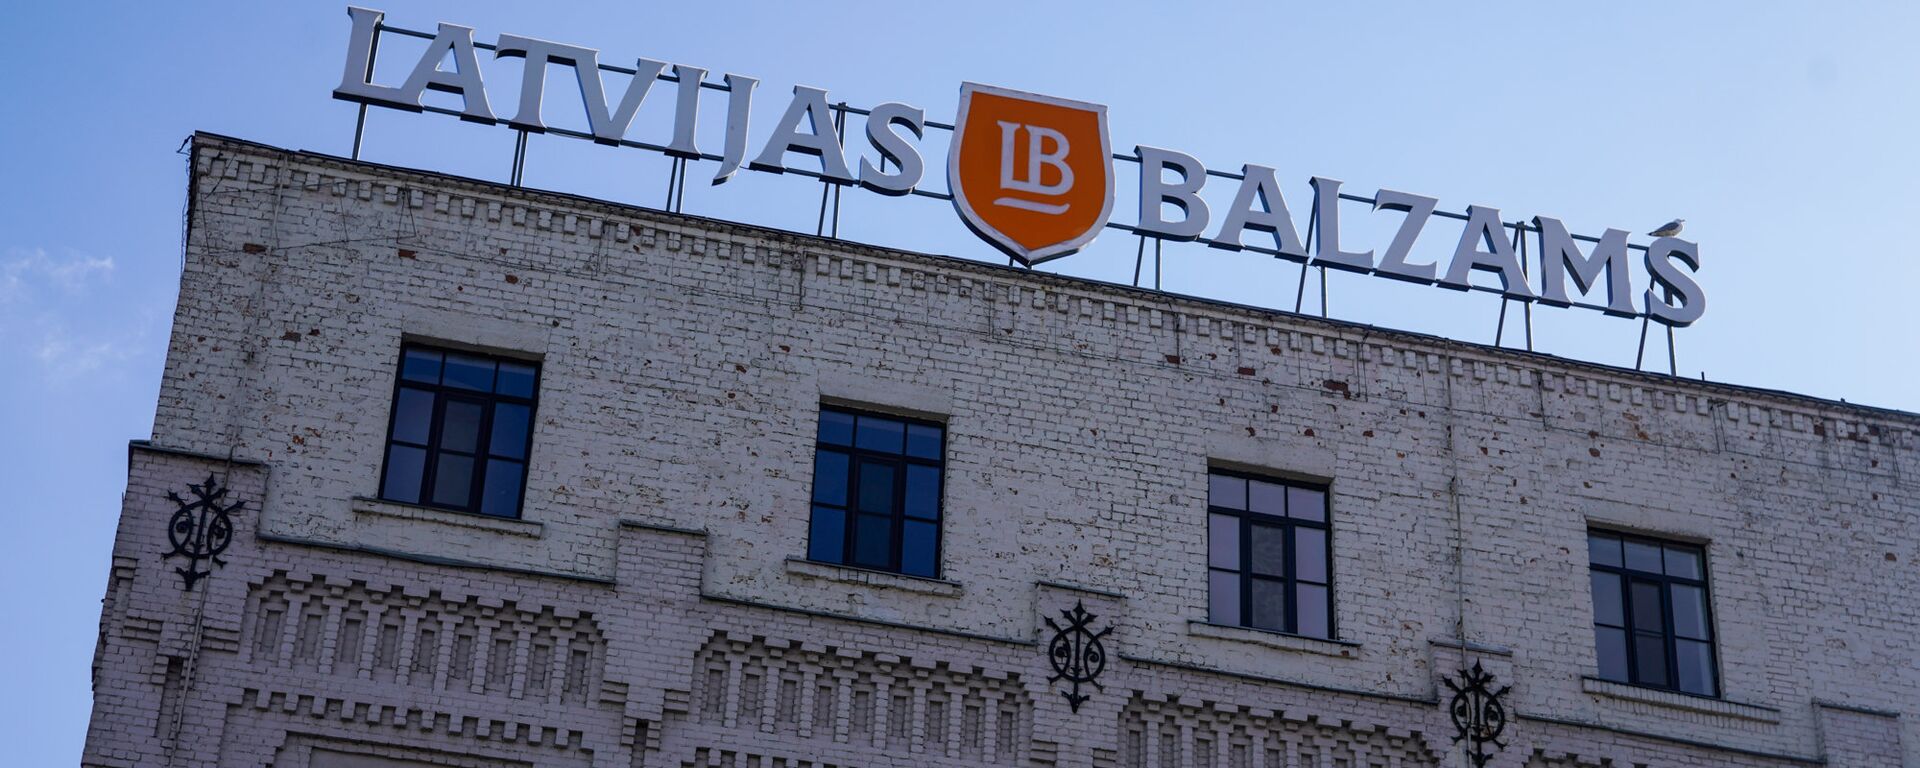 Фасад и логотип здания завода производства алкогольной продукции Латвияс Бальзамс - Sputnik Латвия, 1920, 03.05.2017